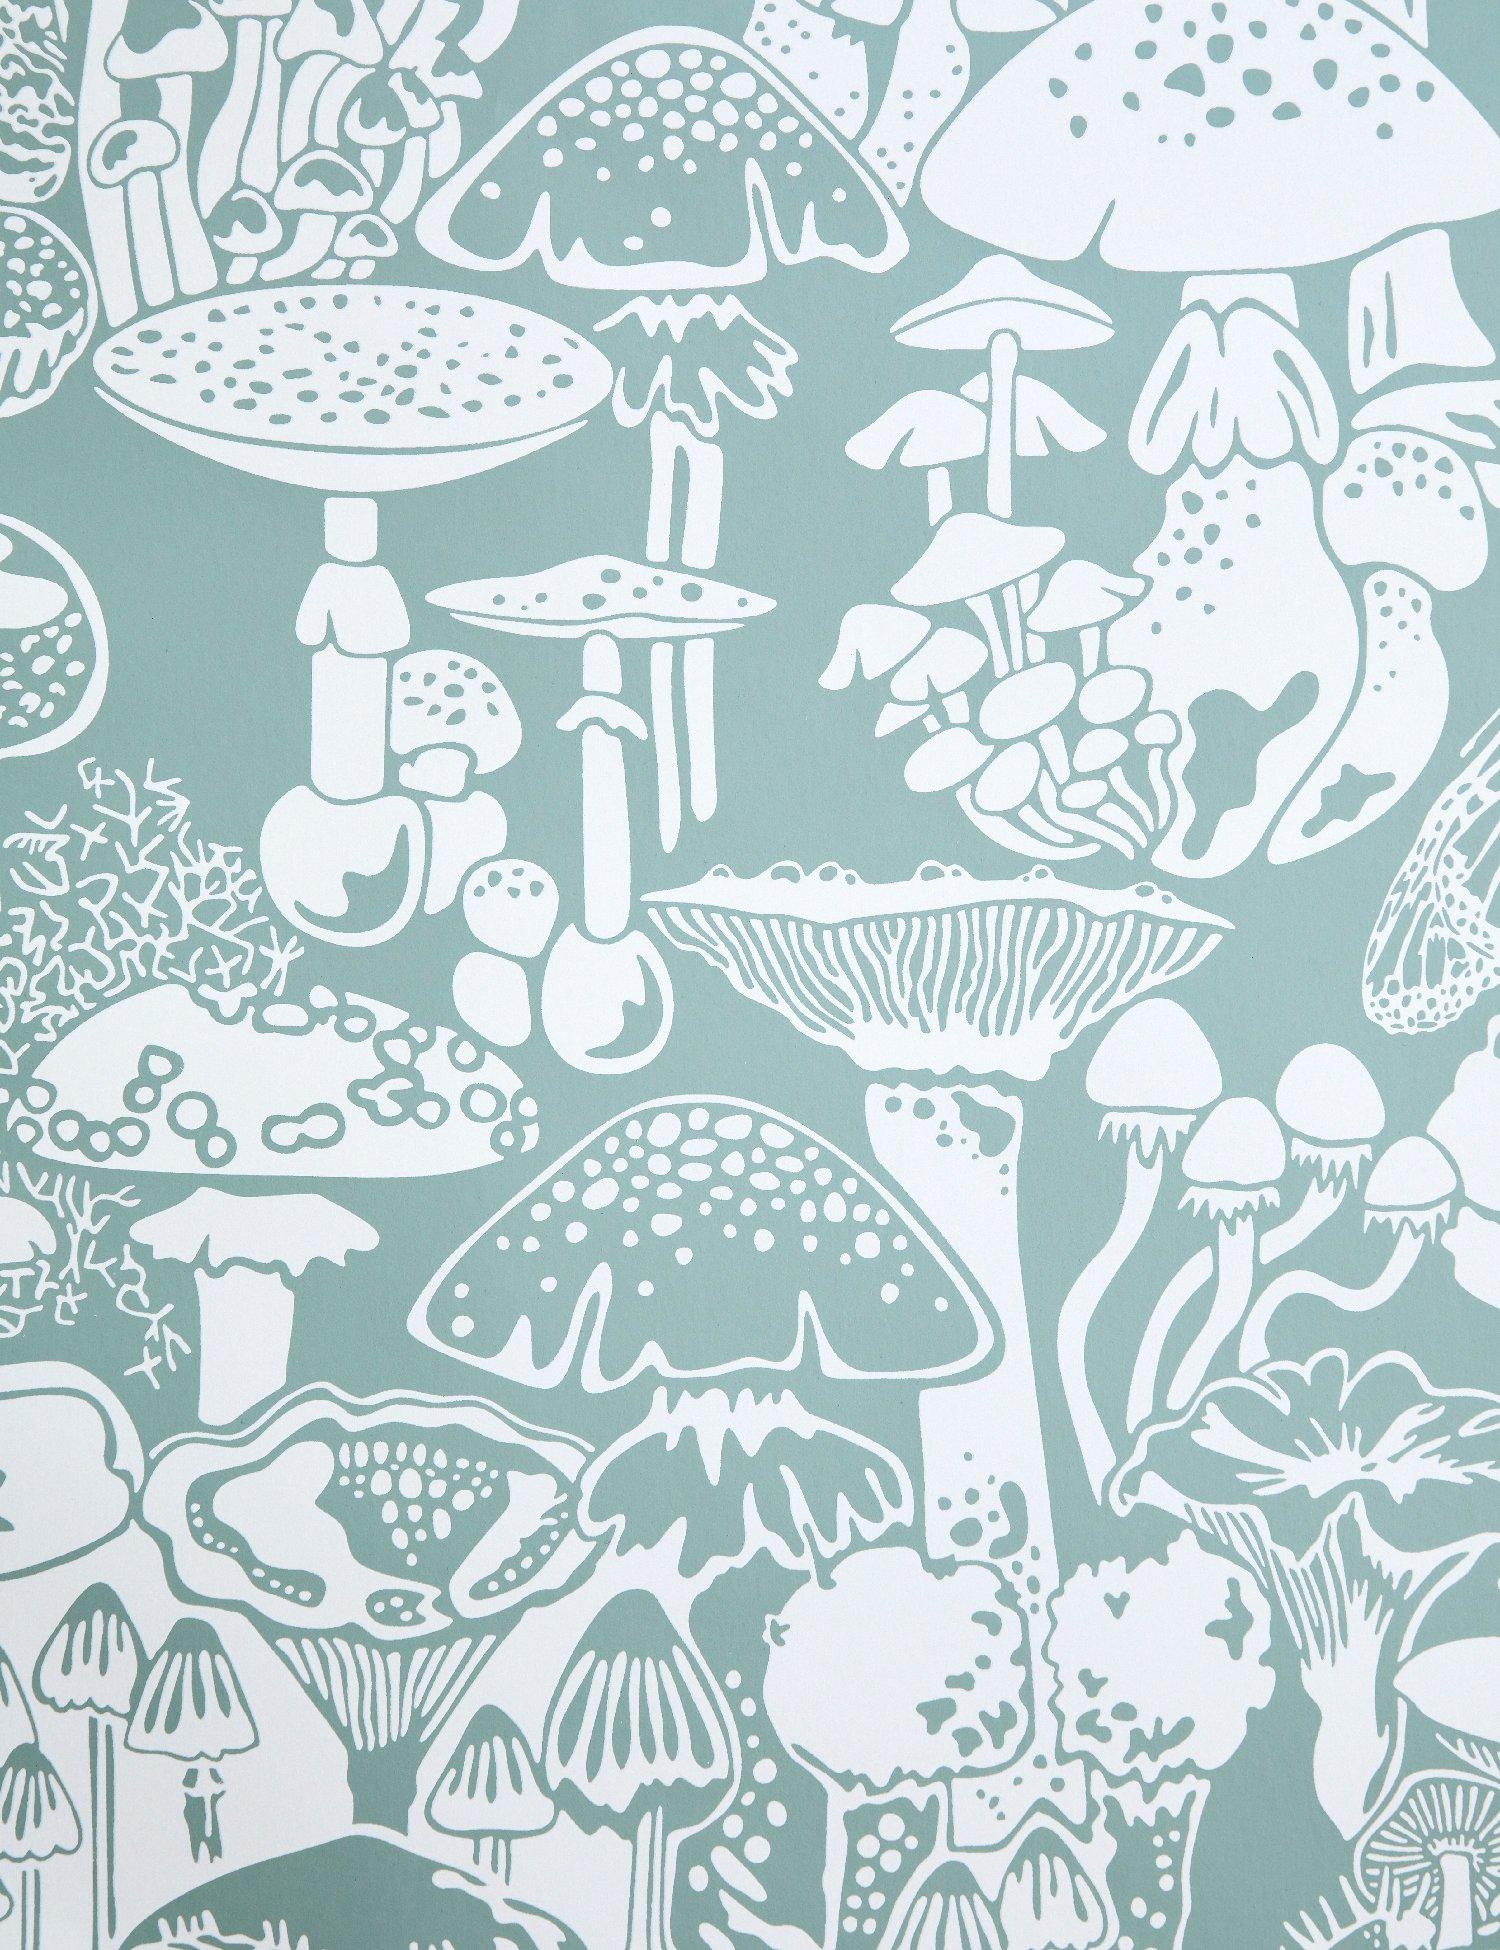 Mushroom City Designer Wallpaper In Color Botanica Soft White On